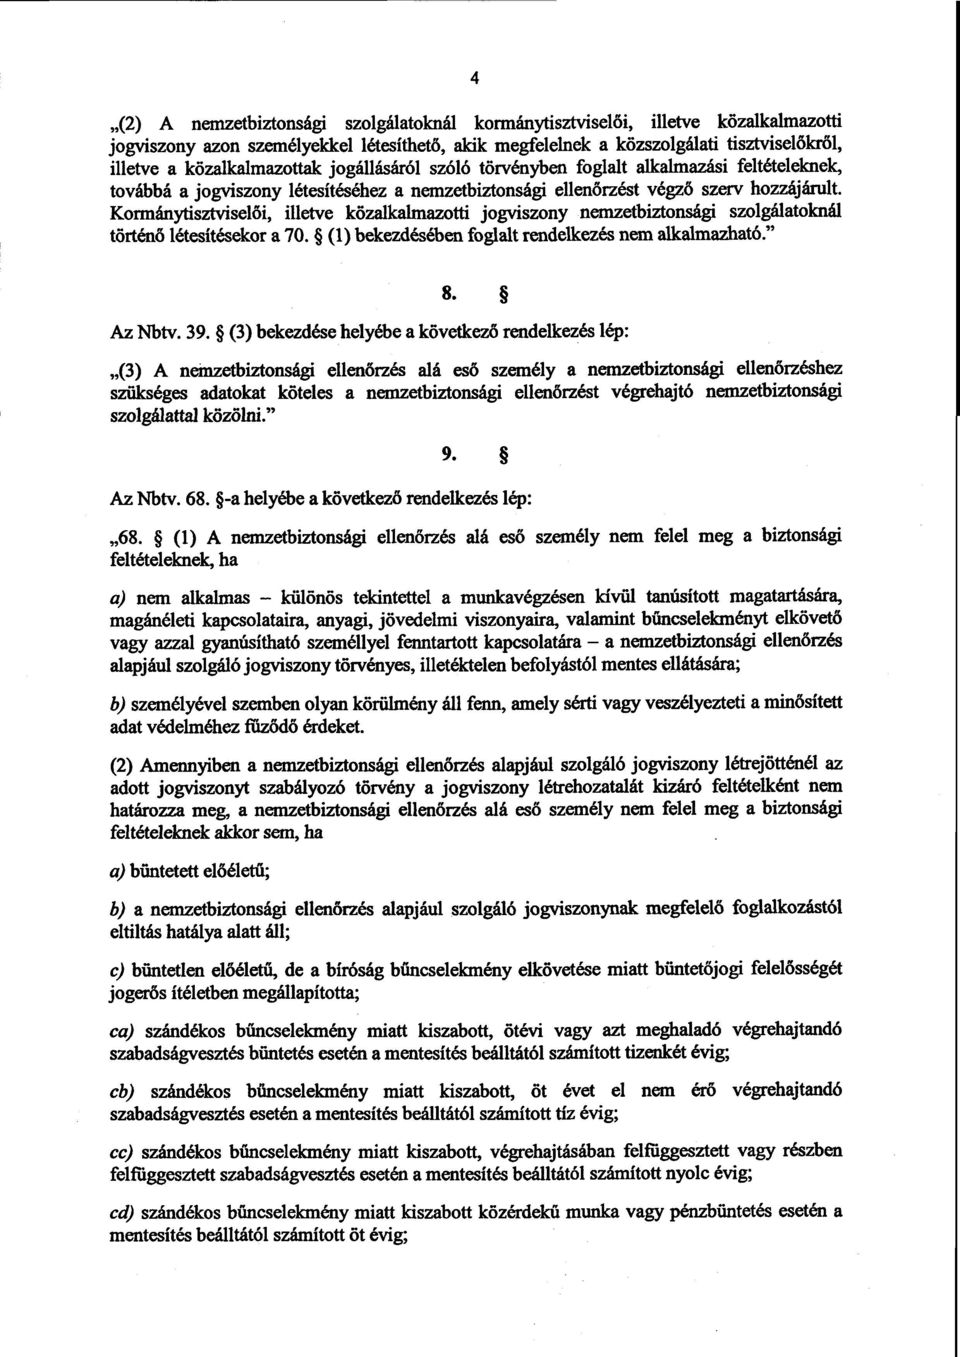 Kormánytisztviselői, illetve közalkalmazotti jogviszony nemzetbiztonsági szolgálatoknál történő létesítésekor a 70. (1) bekezdésében foglalt rendelkezés nem alkalmazható. 8. Az Nbtv. 39.